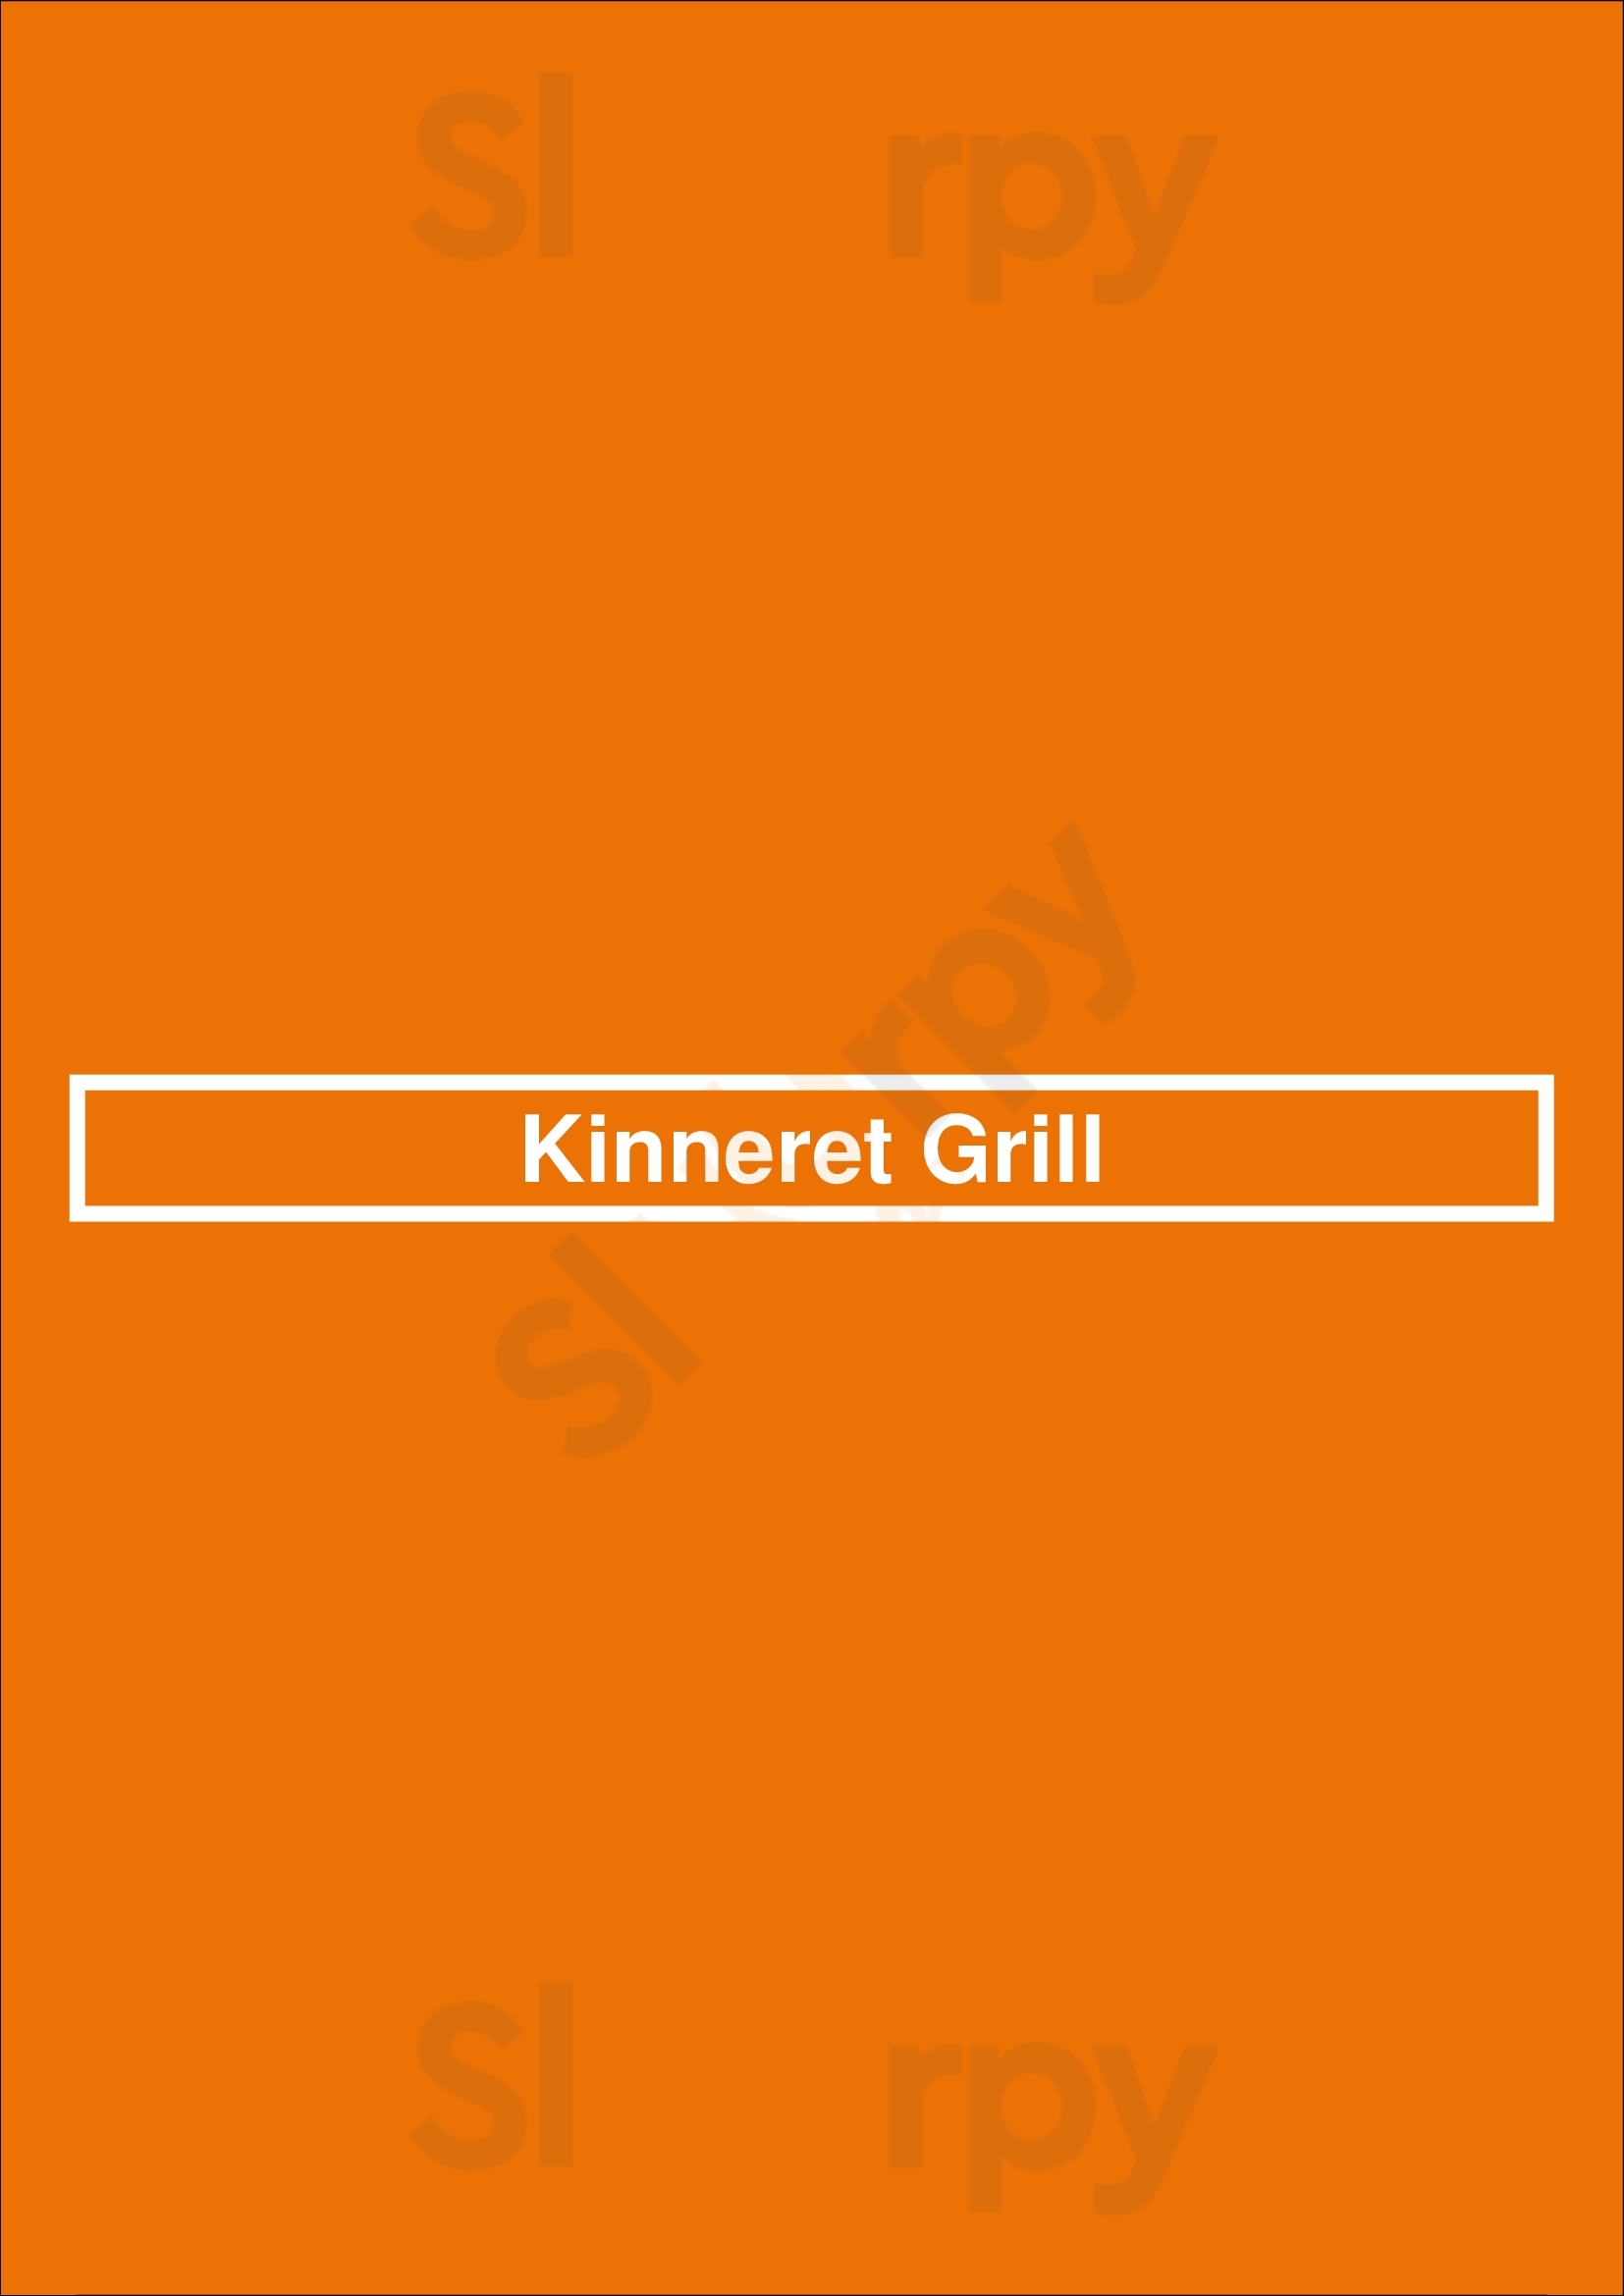 Kinneret Grill Cincinnati Menu - 1